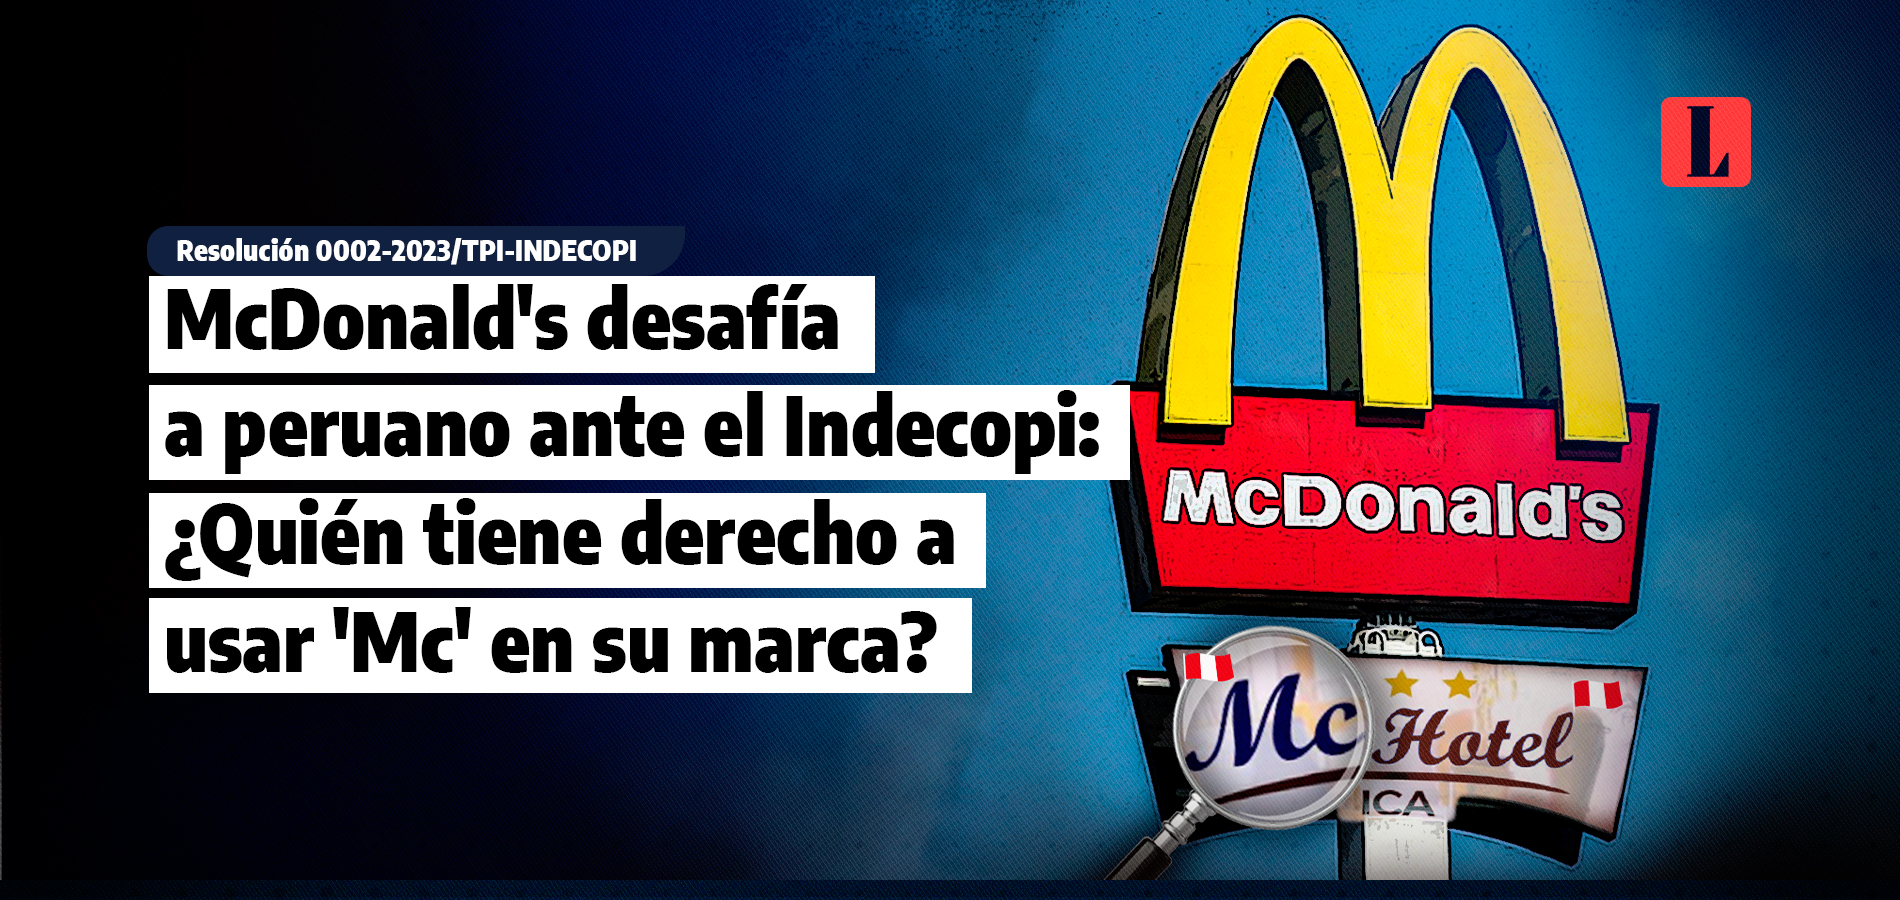 McDonalds desafia a peruano ante el Indecopi Quien tiene derecho a usar Mc en su marca laley.pe